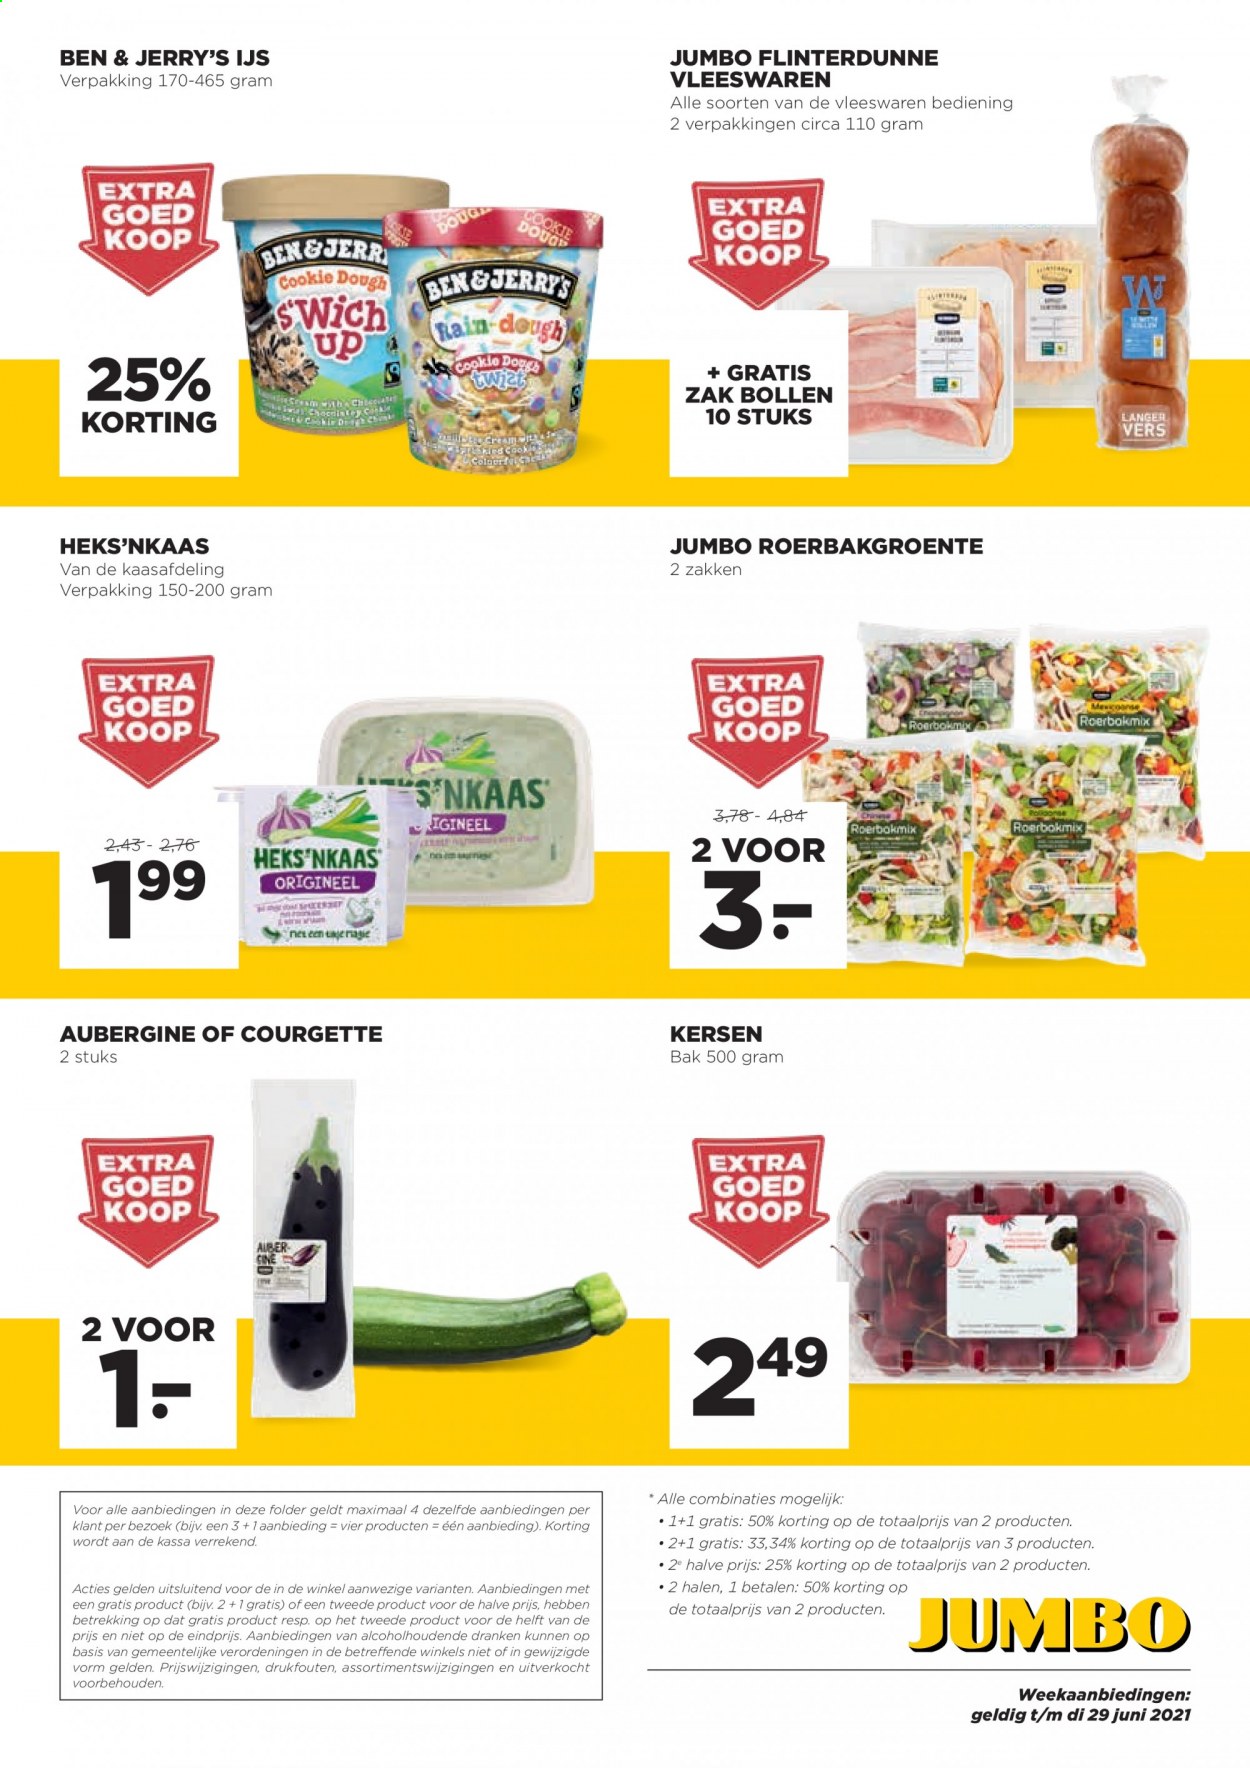 thumbnail - Jumbo-aanbieding - 23-6-2021 - 29-6-2021 -  producten in de aanbieding - aubergine, courgette, kersen, Heks'nkaas, Ben & Jerry's, Ijs. Pagina 4.